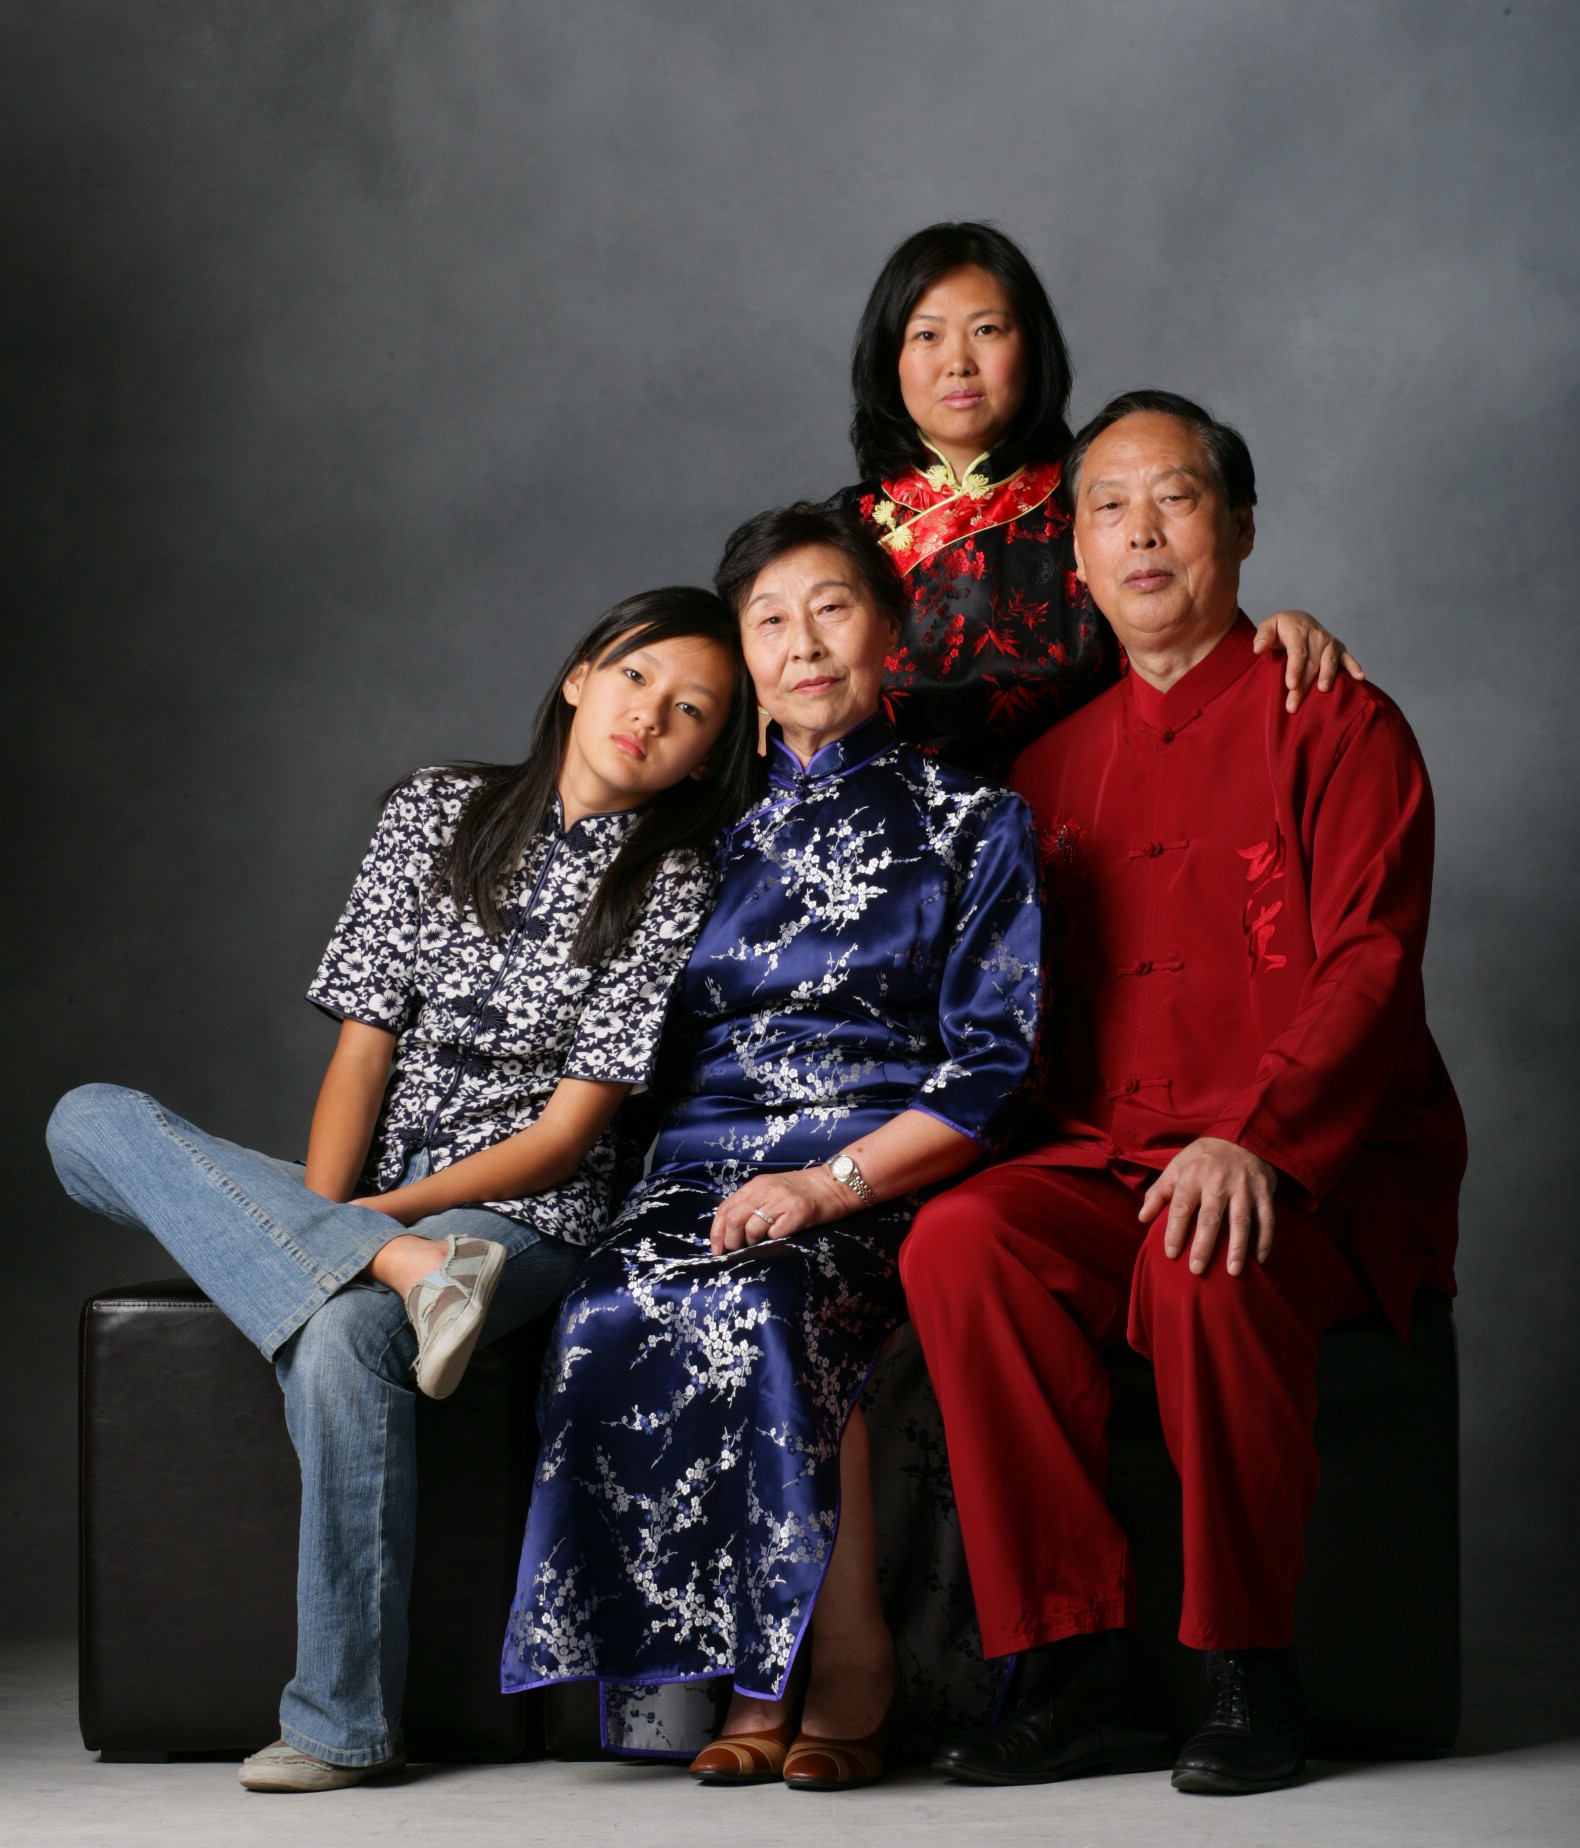 Still of Yvonne Lu, Ruilian Kong, Grace Yang, Bingli Yang in Family Portrait Print AD